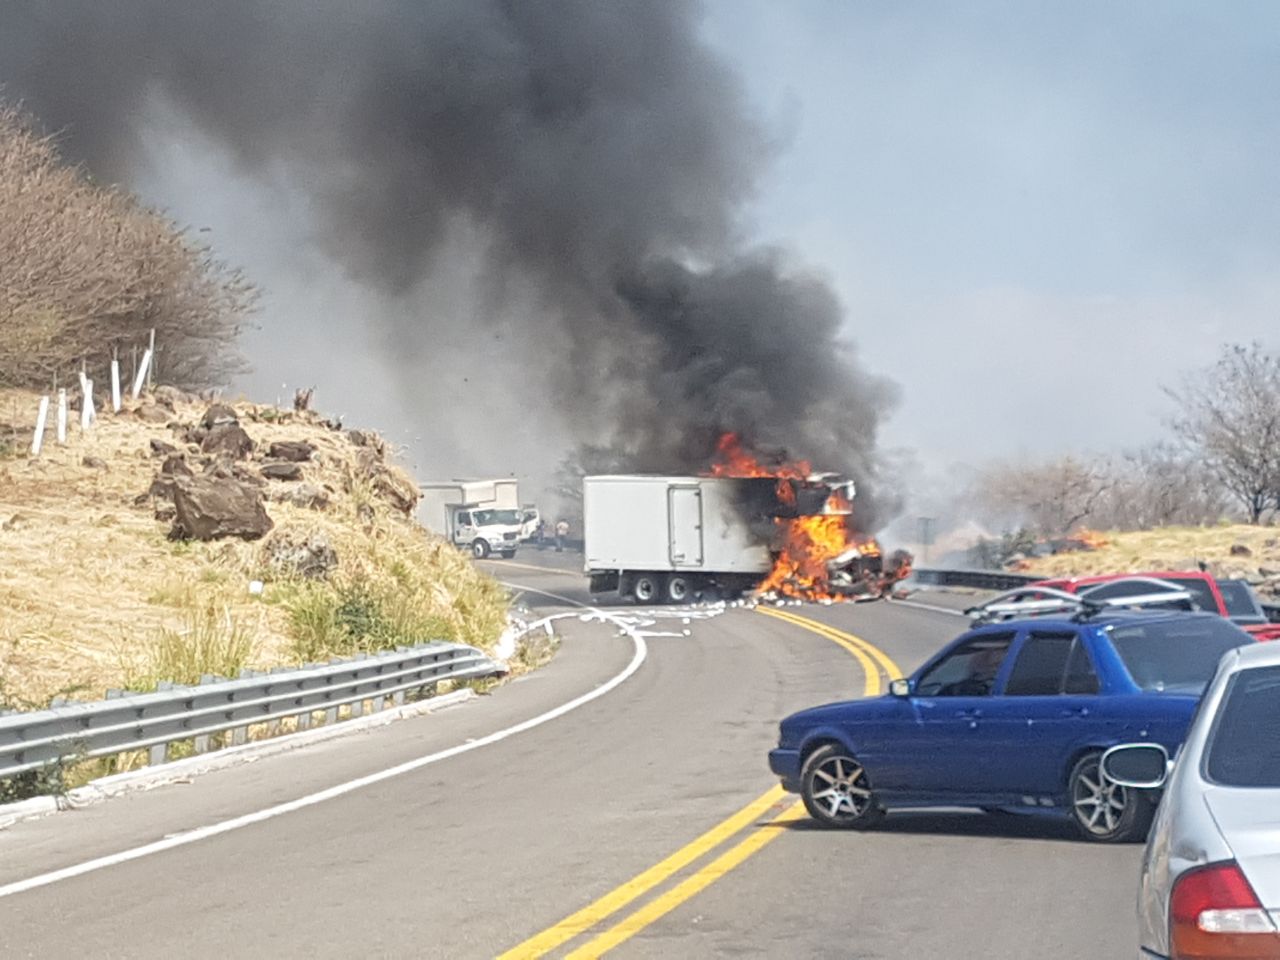  Presunta detención provoca bloqueos y quema de vehículos en Tierra Caliente